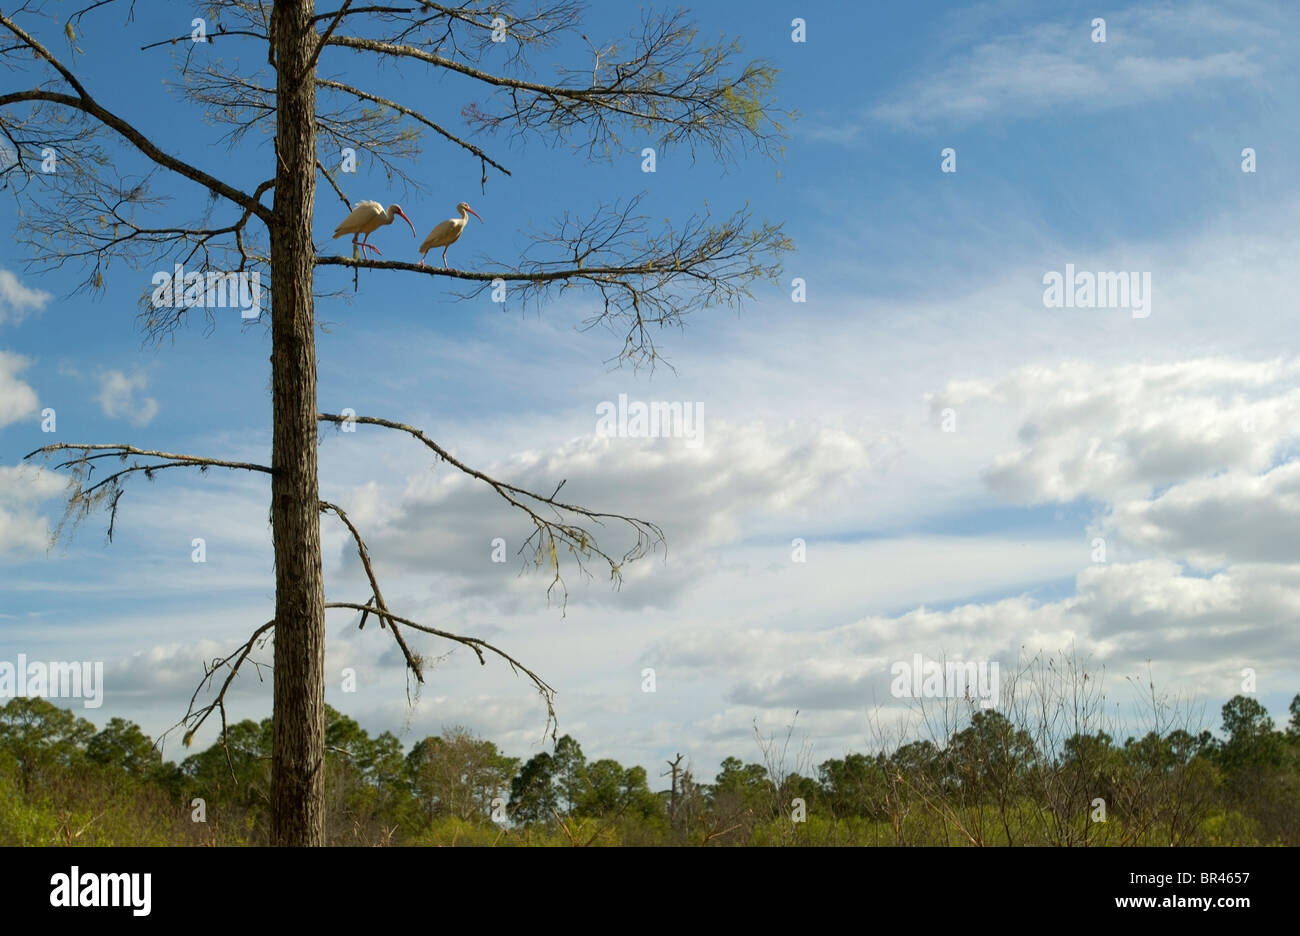 White Ibis perch in a bald cypress tree at Corkscrew Swamp Sanctuary near Naples, Florida. Stock Photo